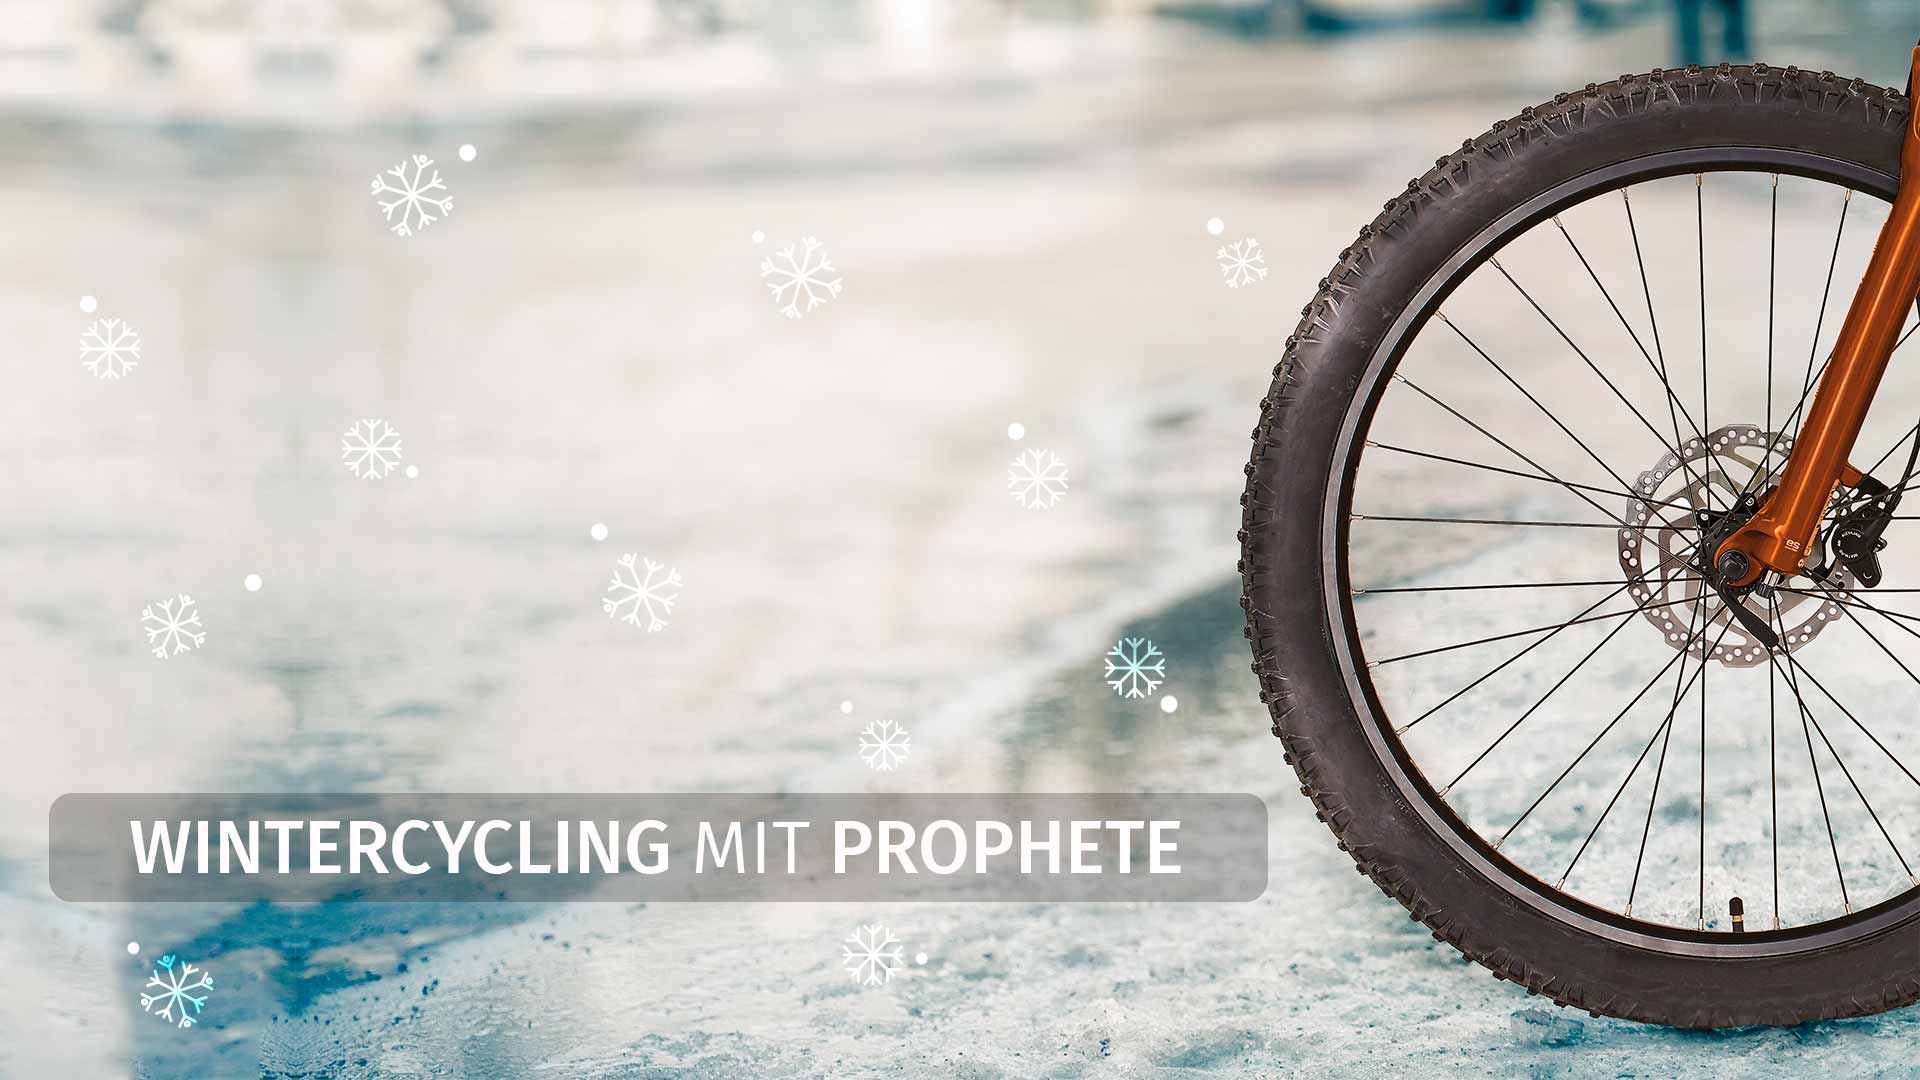 Wintercycling mit Prophete - Bleiben Sie sicher